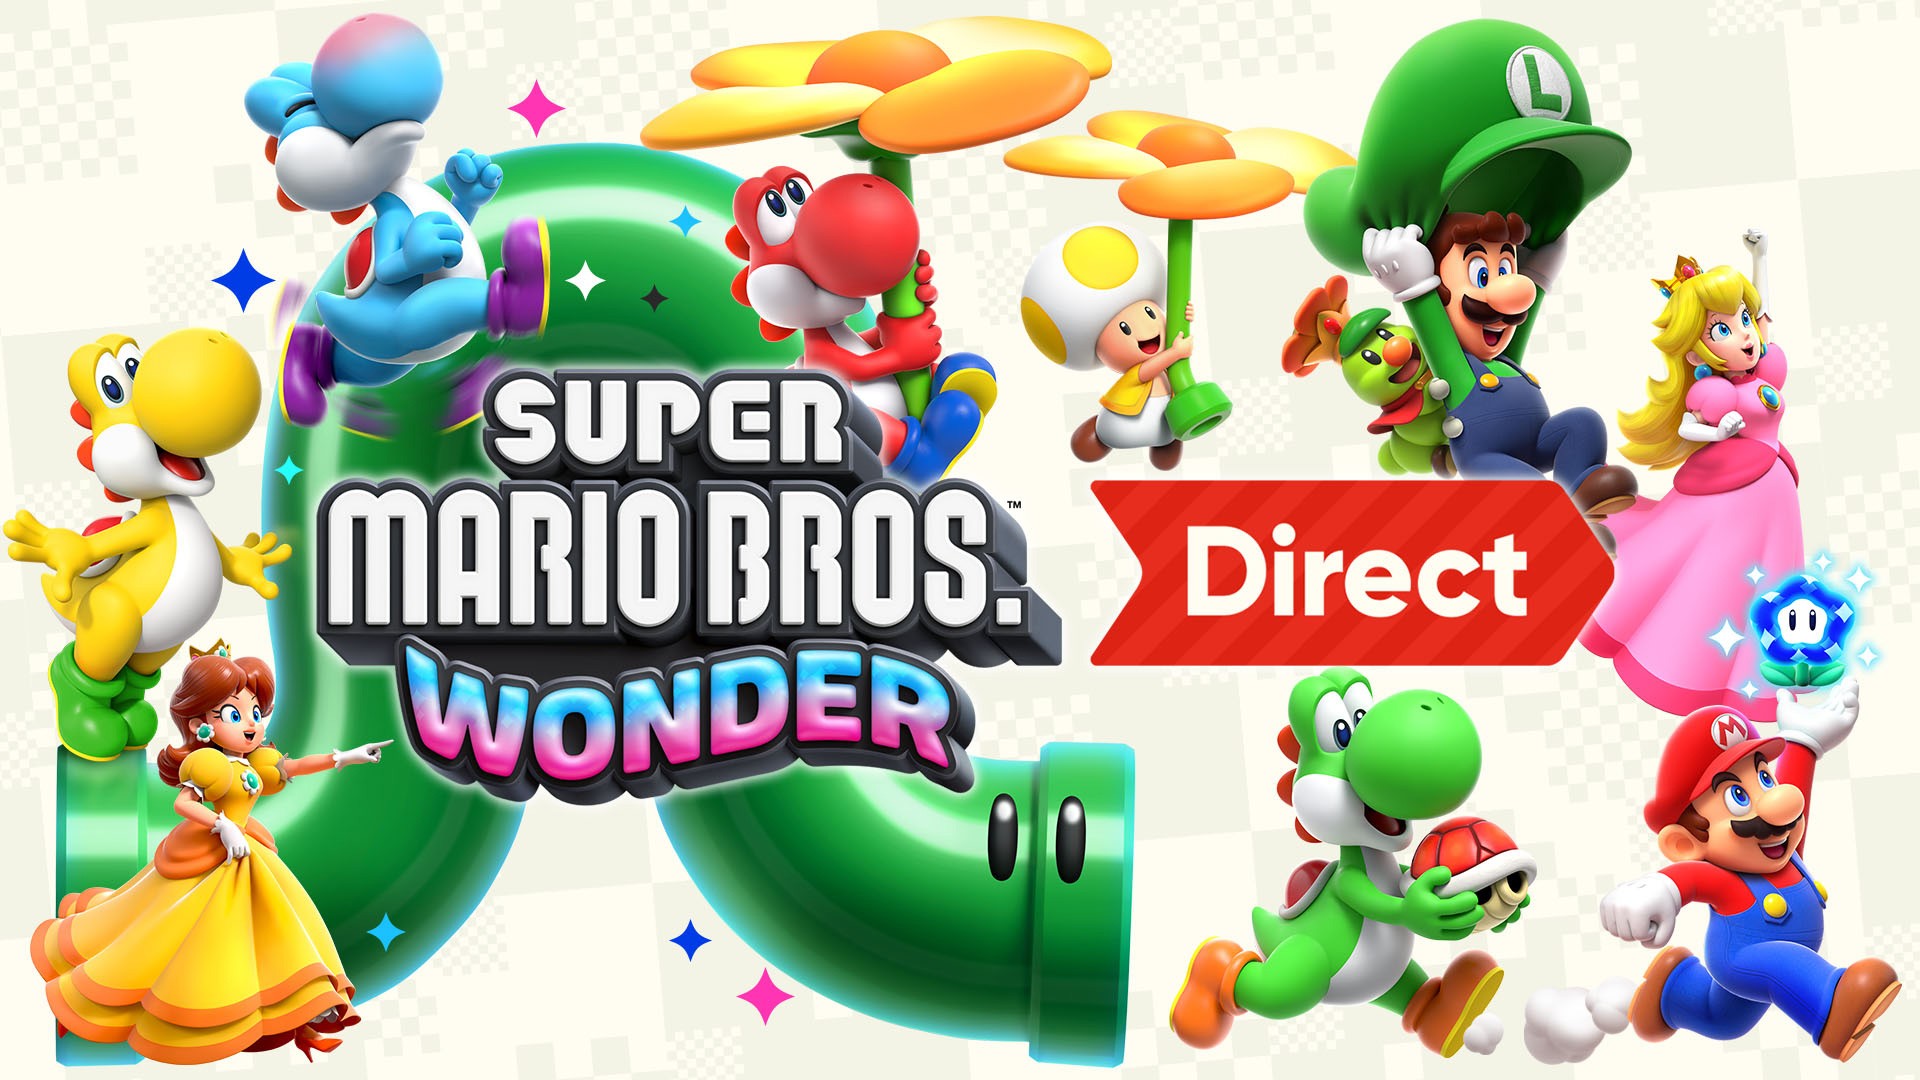 Super Mario Bros. Wonder chega à Nintendo Switch a 20 de outubro! 